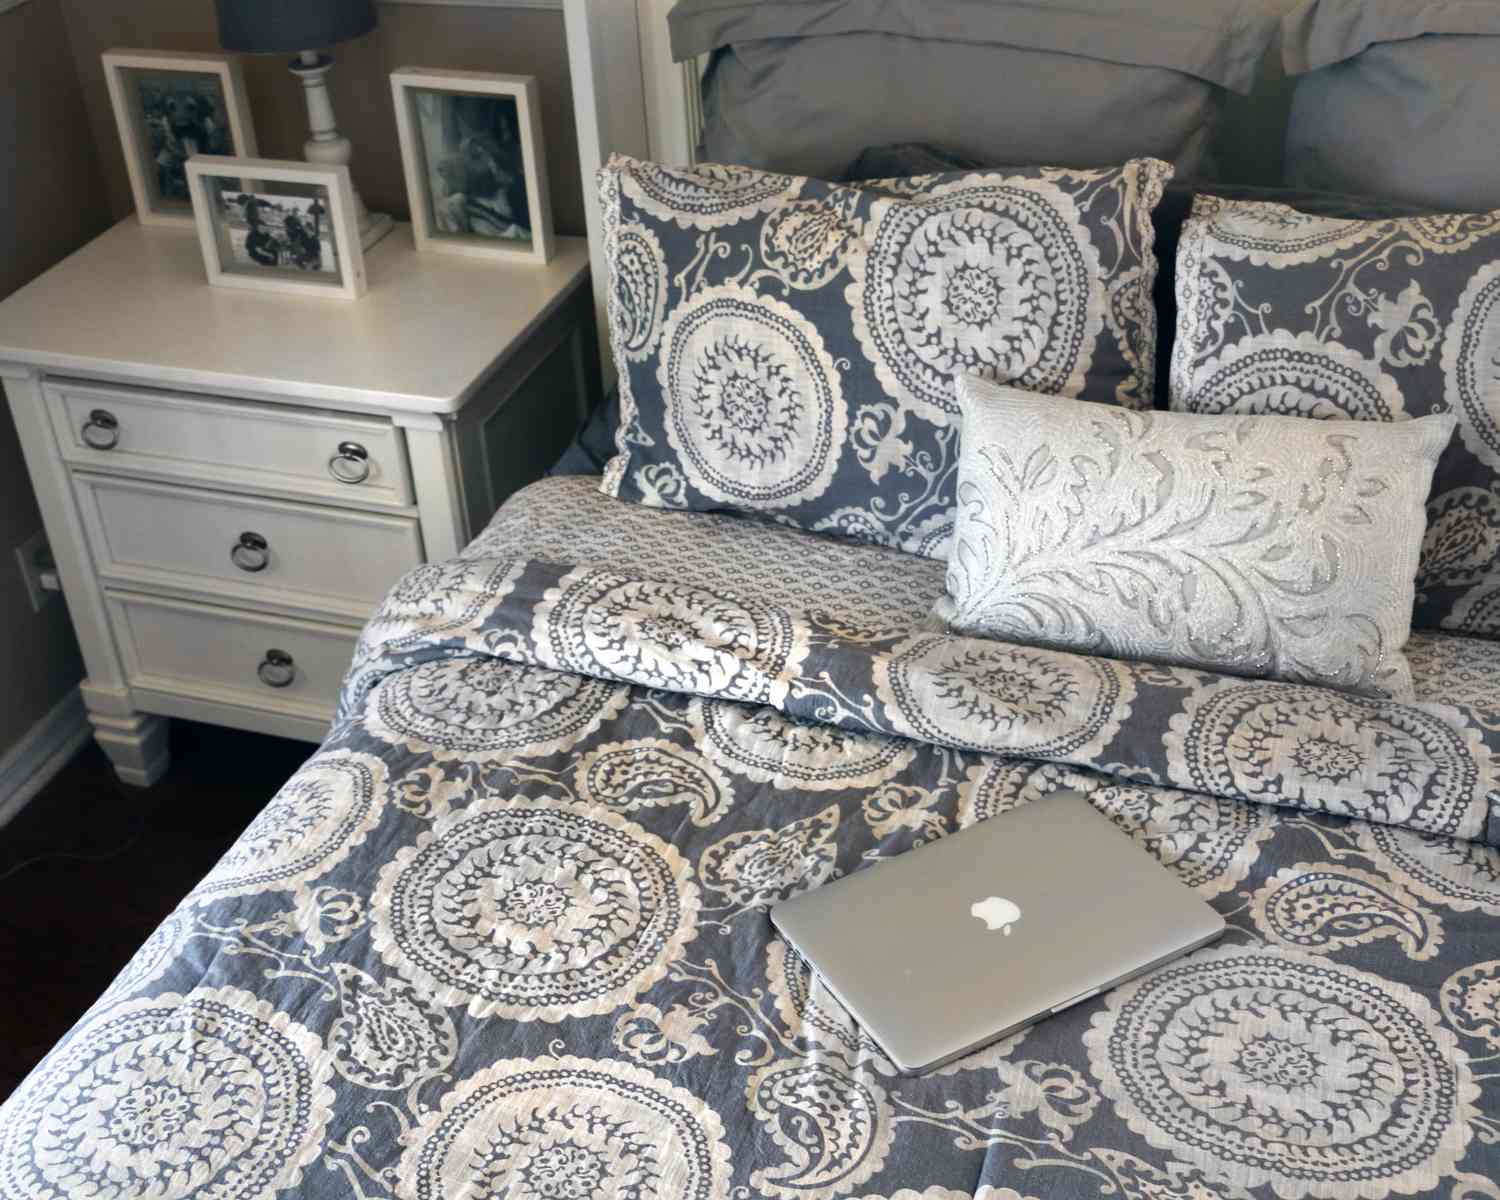 Los nuevos estampados y patrones en las sábanas del dormitorio pueden animar cualquier dormitorio principal